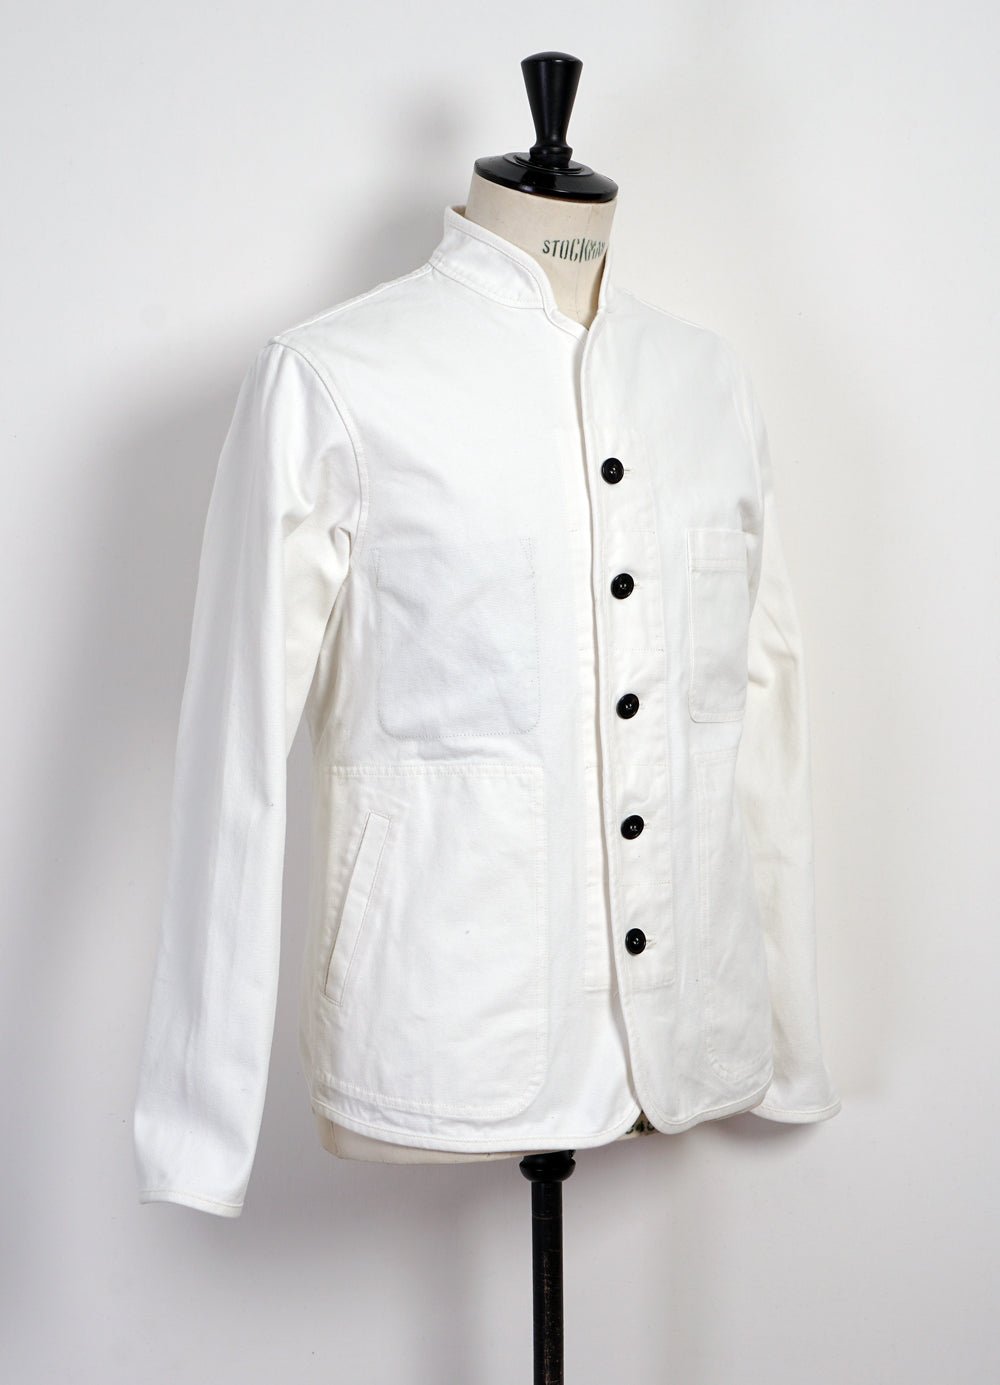 HANSEN GARMENTS - ERLING | Casual Work Jacket | Off White - HANSEN Garments